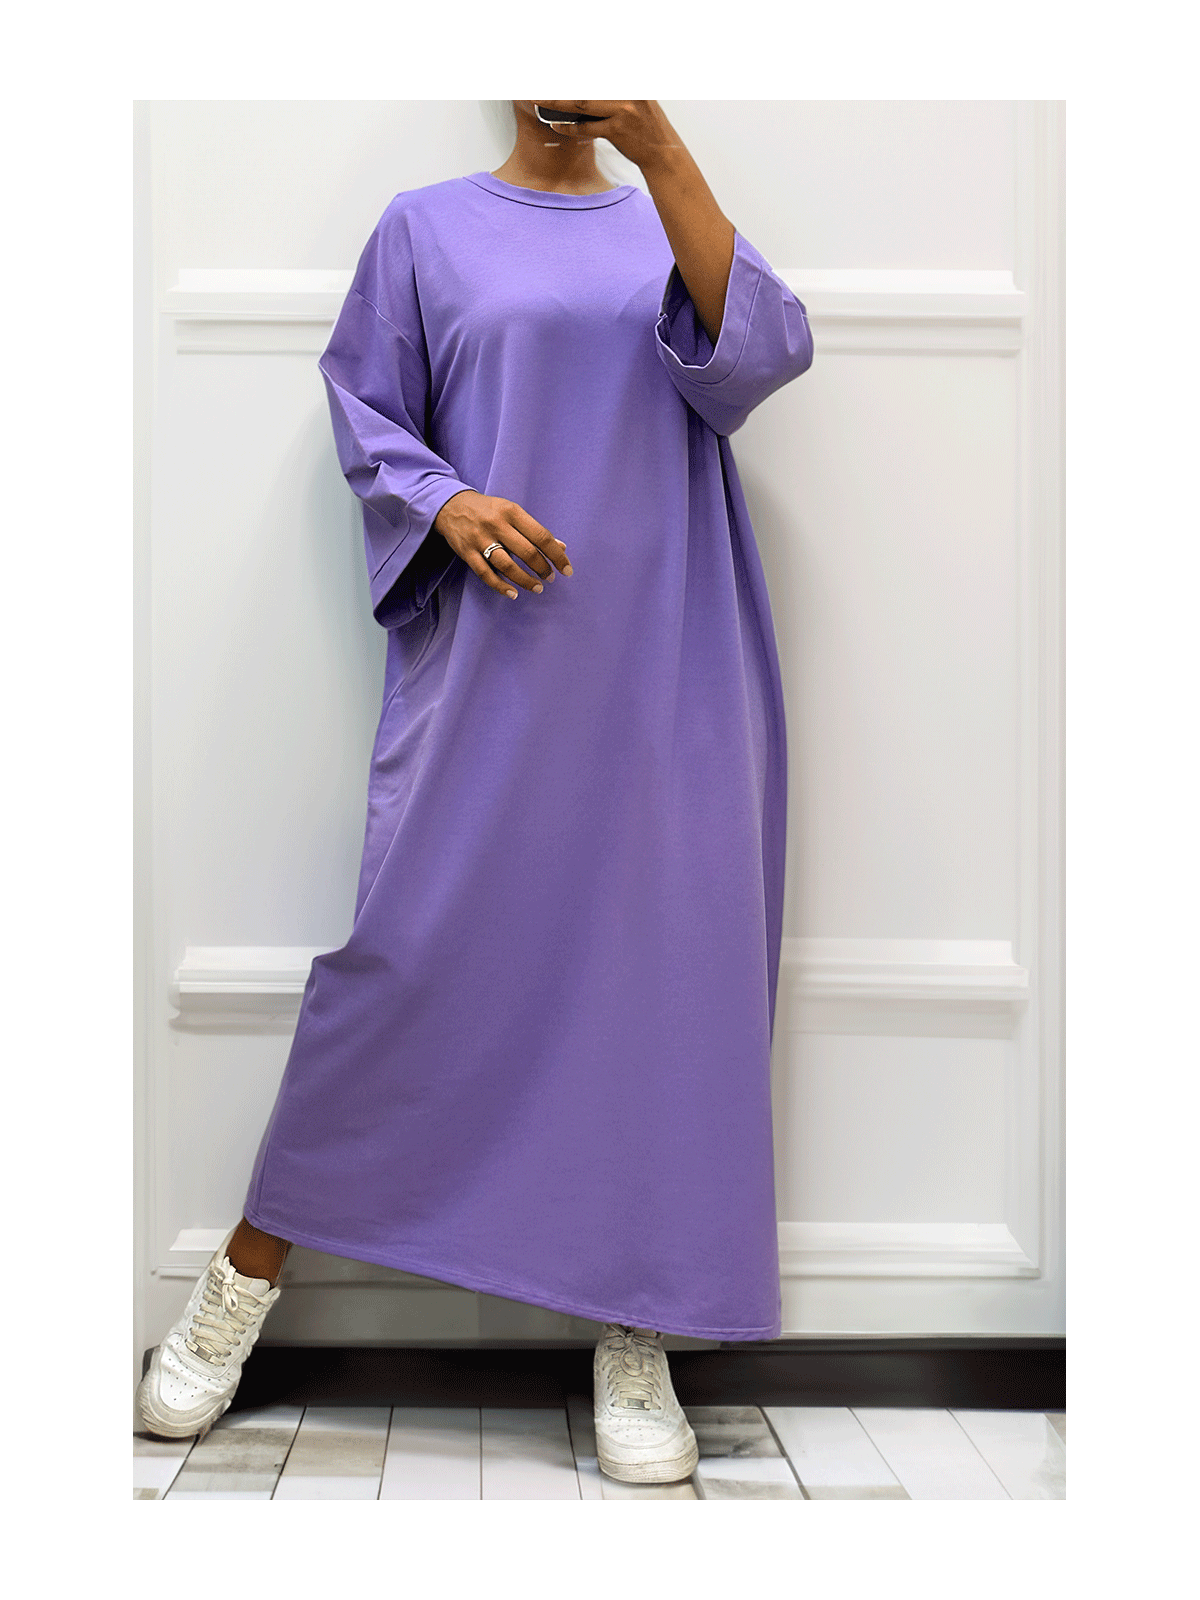 Longue robe over size en coton lilas très épais - 5